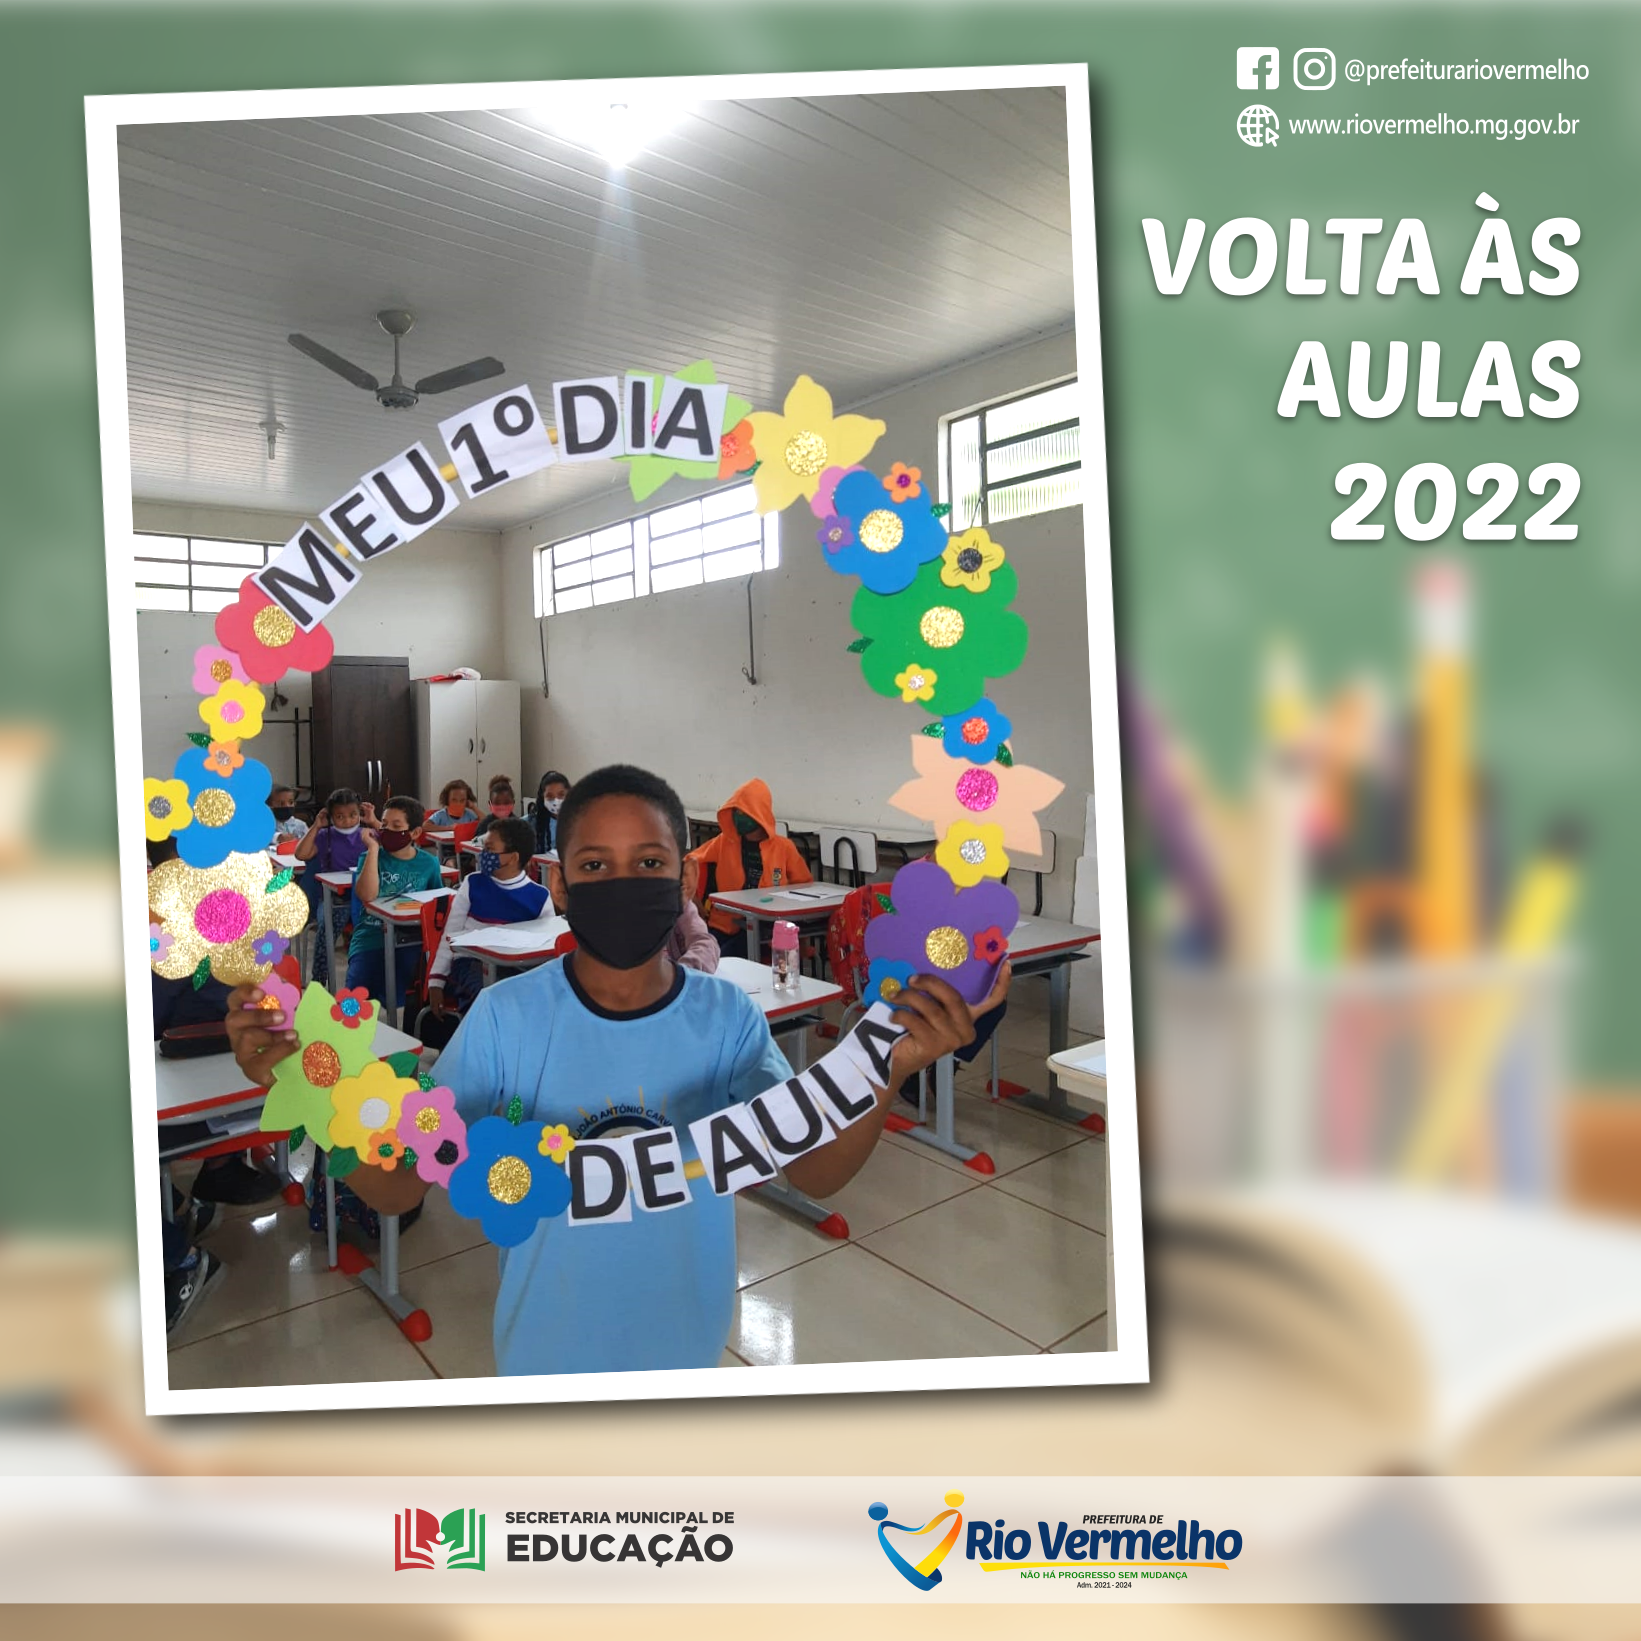 You are currently viewing VOLTA ÀS AULAS 2022 – Confira como foi o primeiro dia de aula em algumas escolas do município